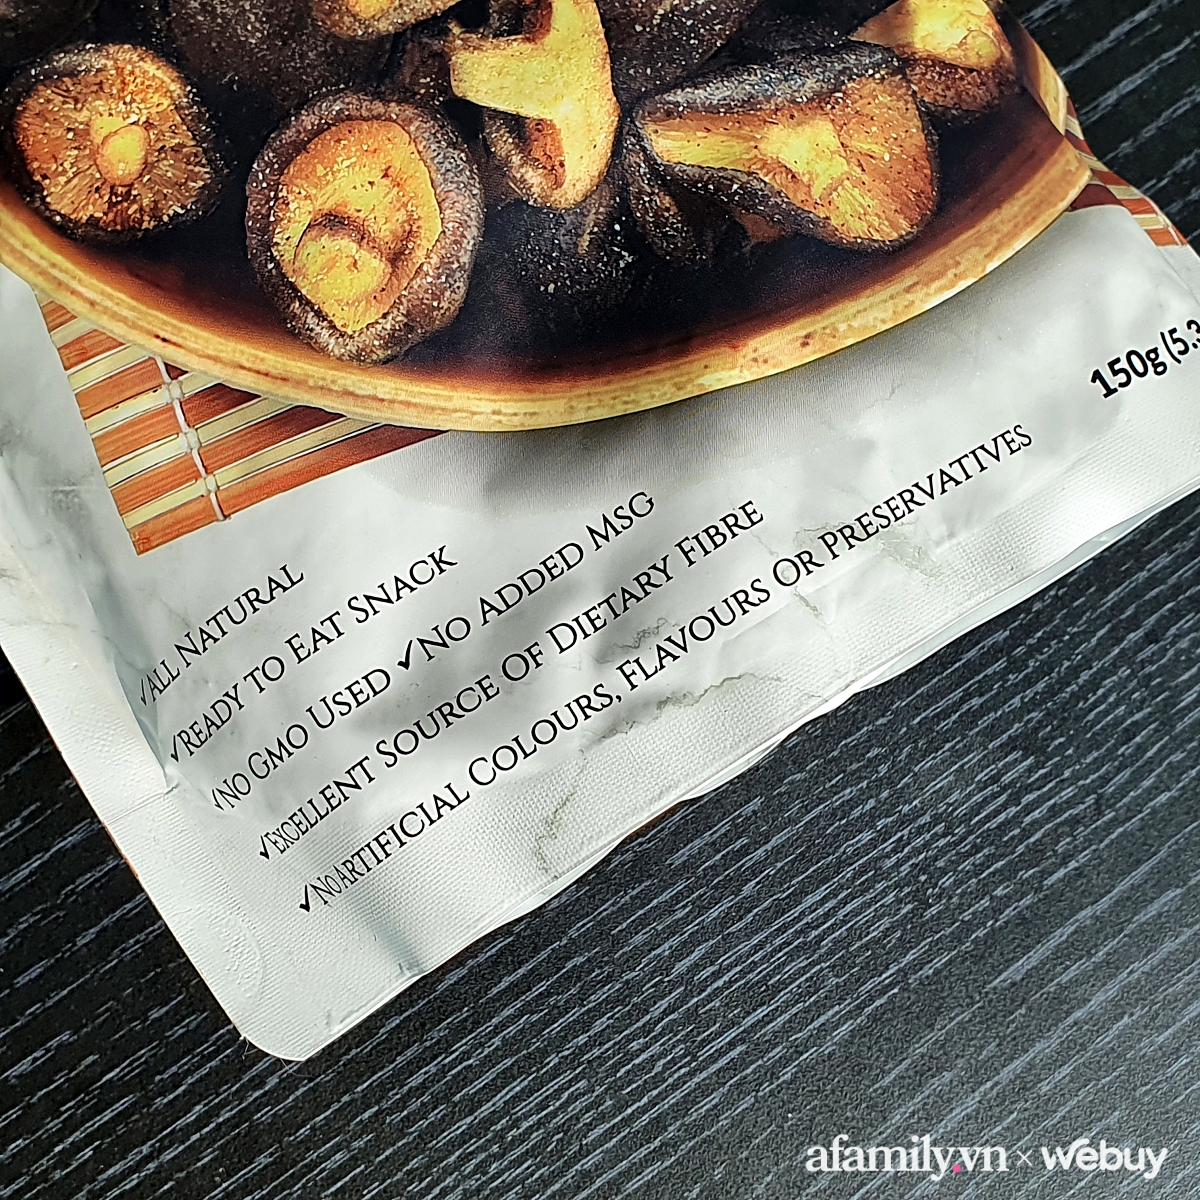 Ăn thử snack nấm hương sấy khô kiểu Úc hot hit trên mạng: Có thật là ngon như bim bim mà không sợ béo? - Ảnh 4.